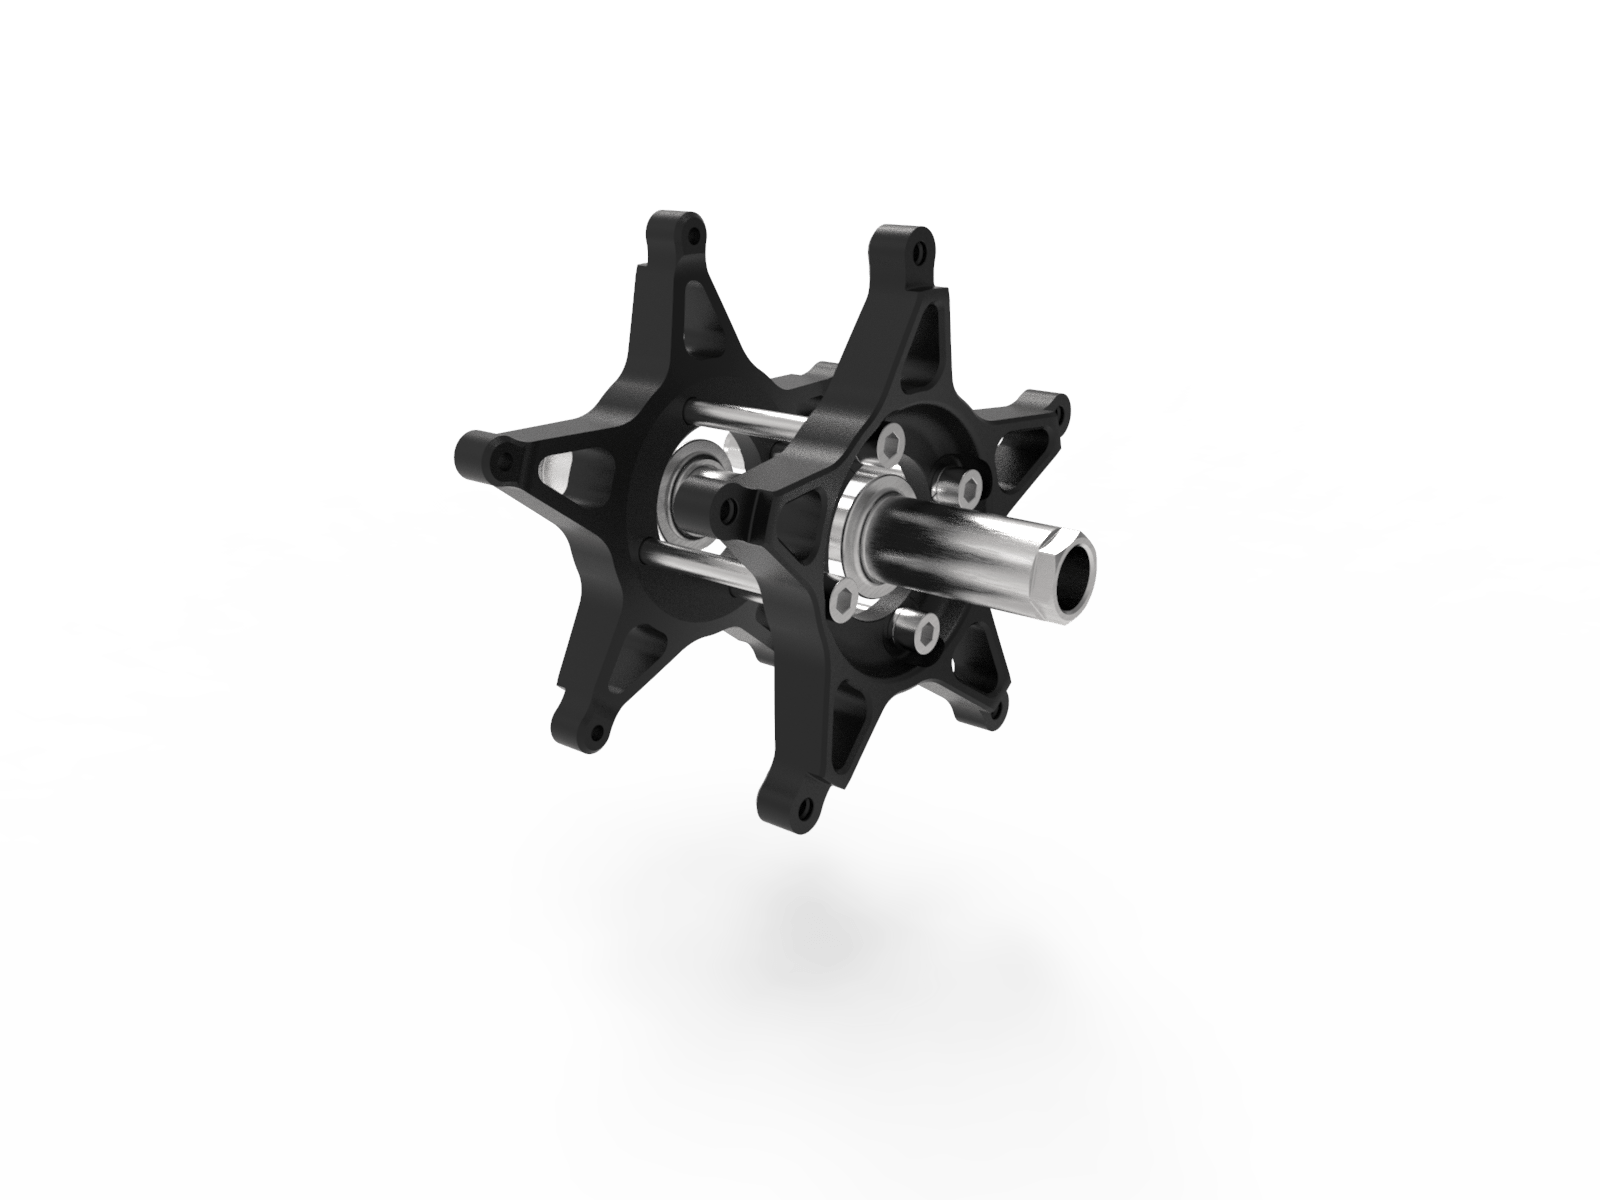 S1000RR conversion kit cast wheel 4 bolt